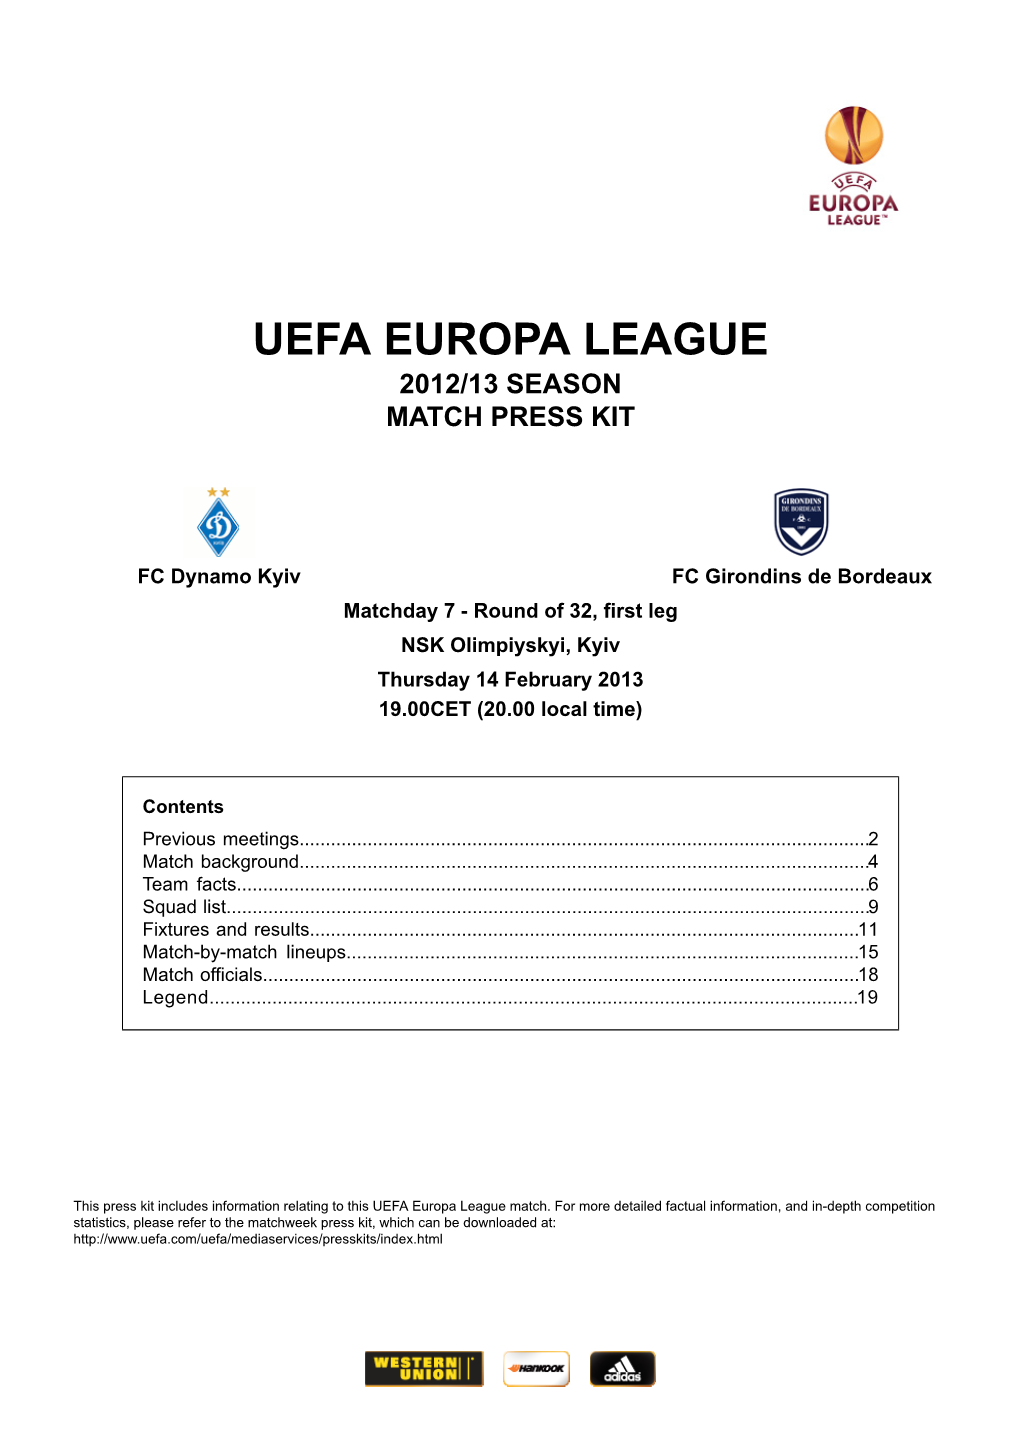 2012/13 Season Match Press Kit